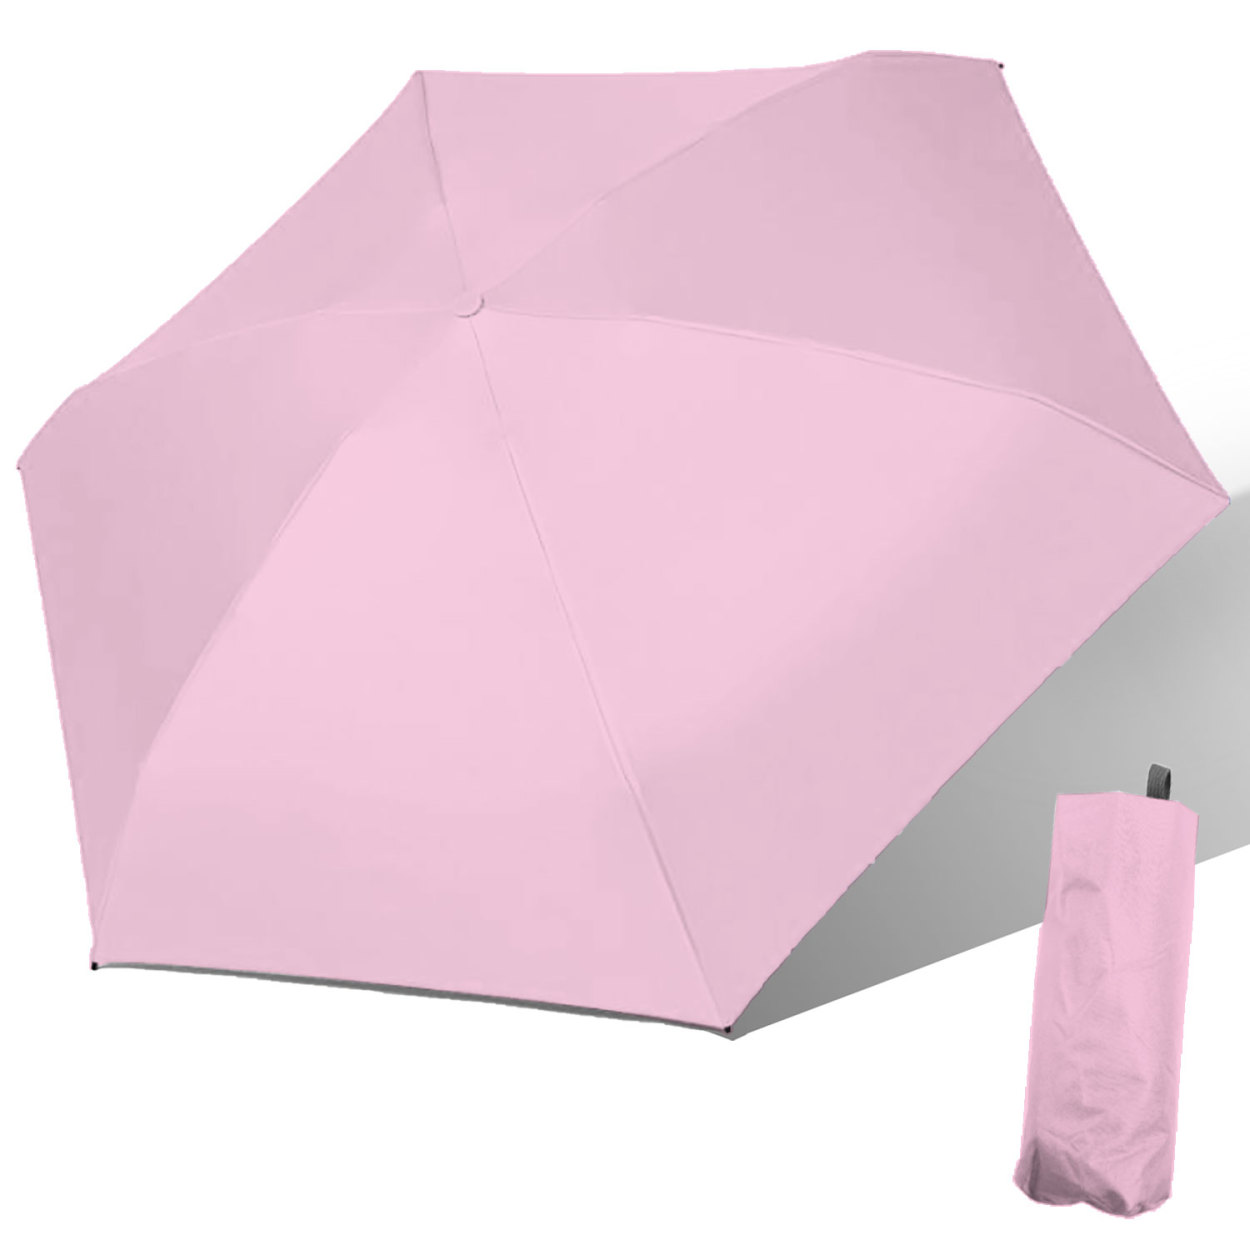 晴雨兼用折り畳み傘 軽量 折りたたみ傘 UVカット 雨傘 日傘 レディース 完全遮光 遮光率 100% メンズ コンパクト シンプル カラフル  撥水加工 人気 かわいい